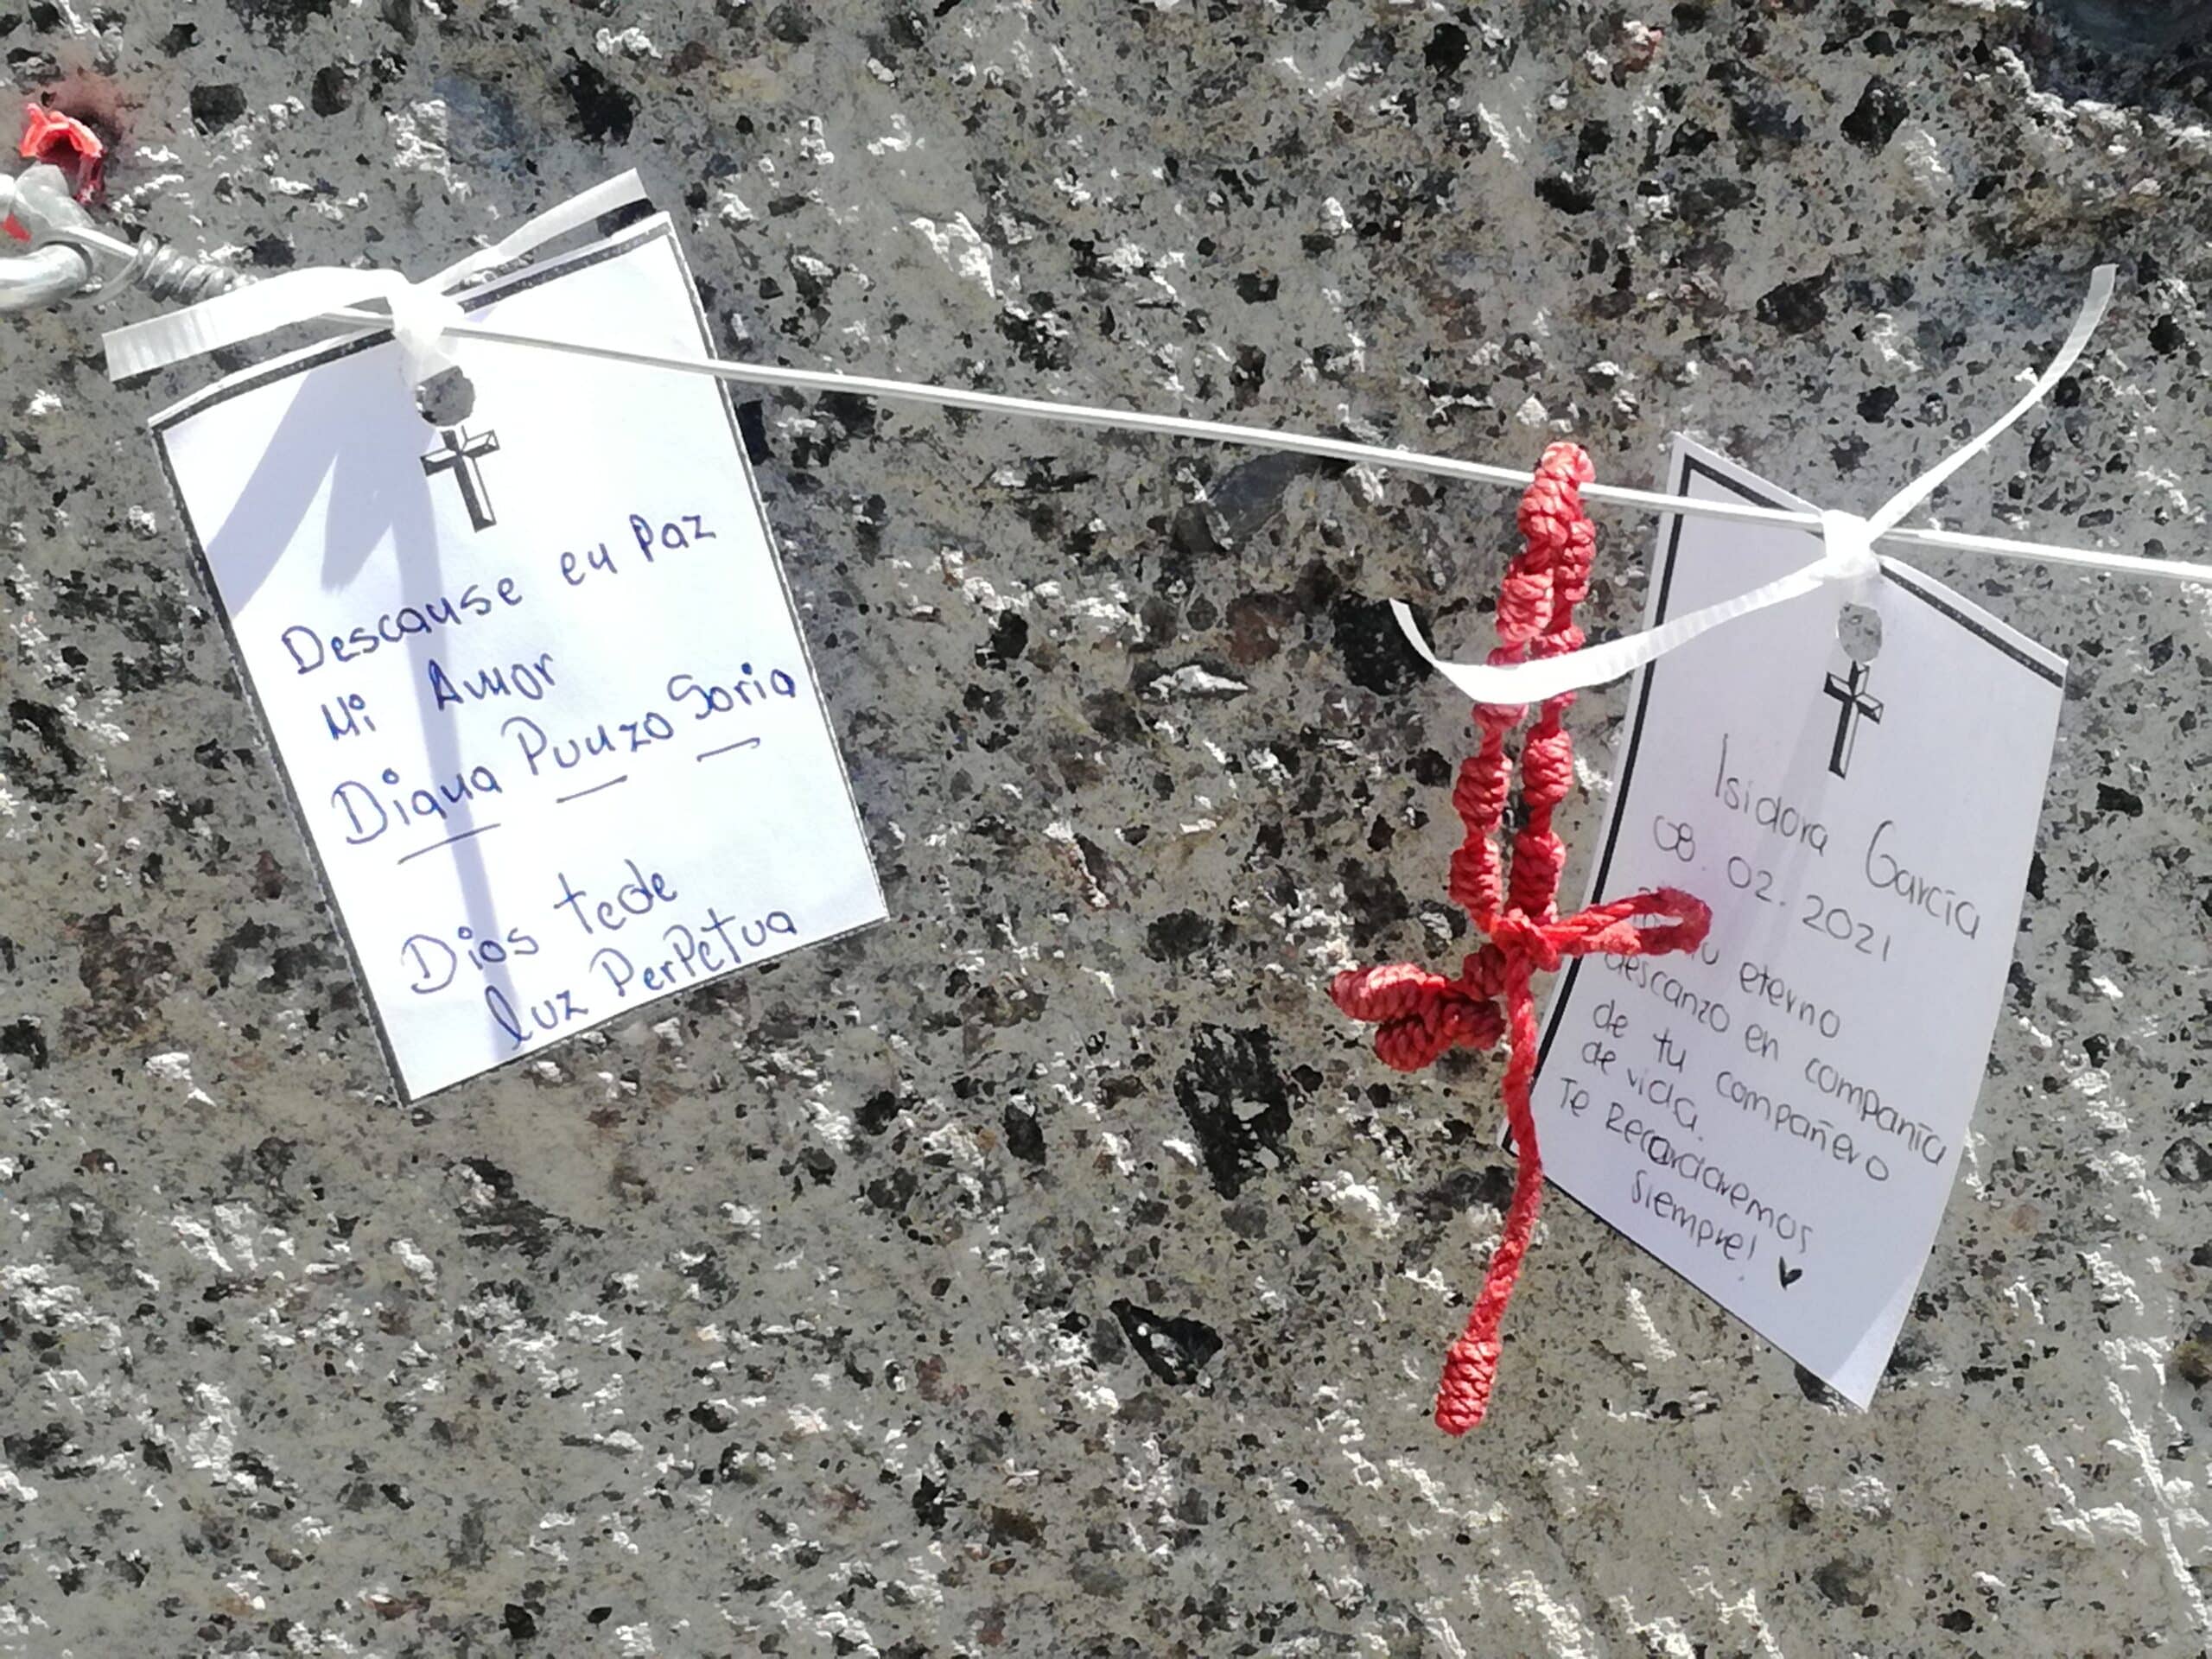 Flores, prendas o accesorios de los difuntos son puestas en el memorial. Foto: Cynthia Fabila/DLF